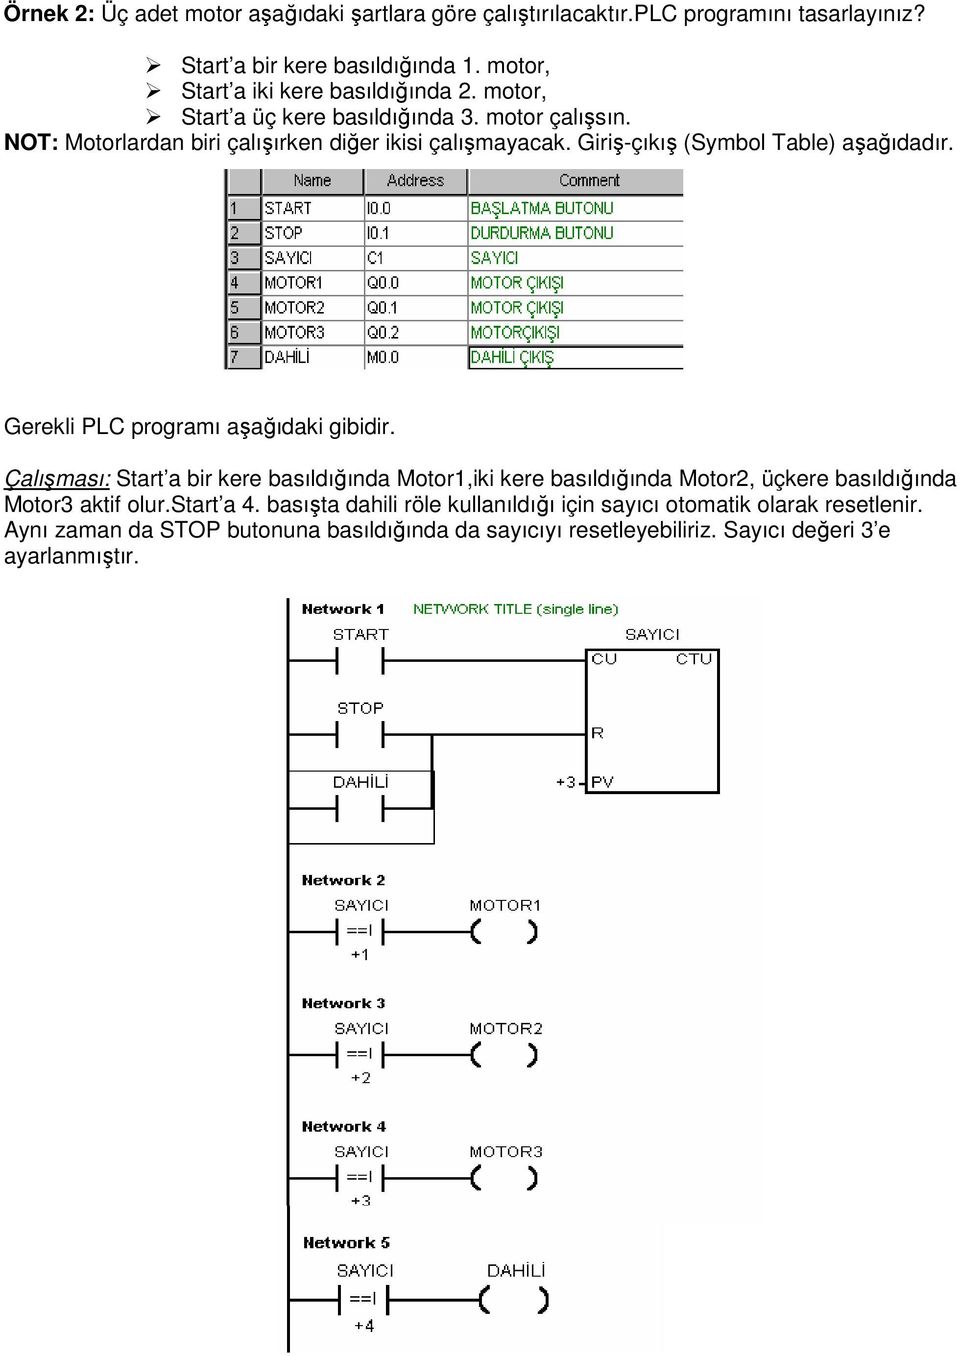 Gerekli PLC programı aşağıdaki gibidir. Çalışması: Start a bir kere basıldığında Motor1,iki kere basıldığında Motor2, üçkere basıldığında Motor3 aktif olur.start a 4.